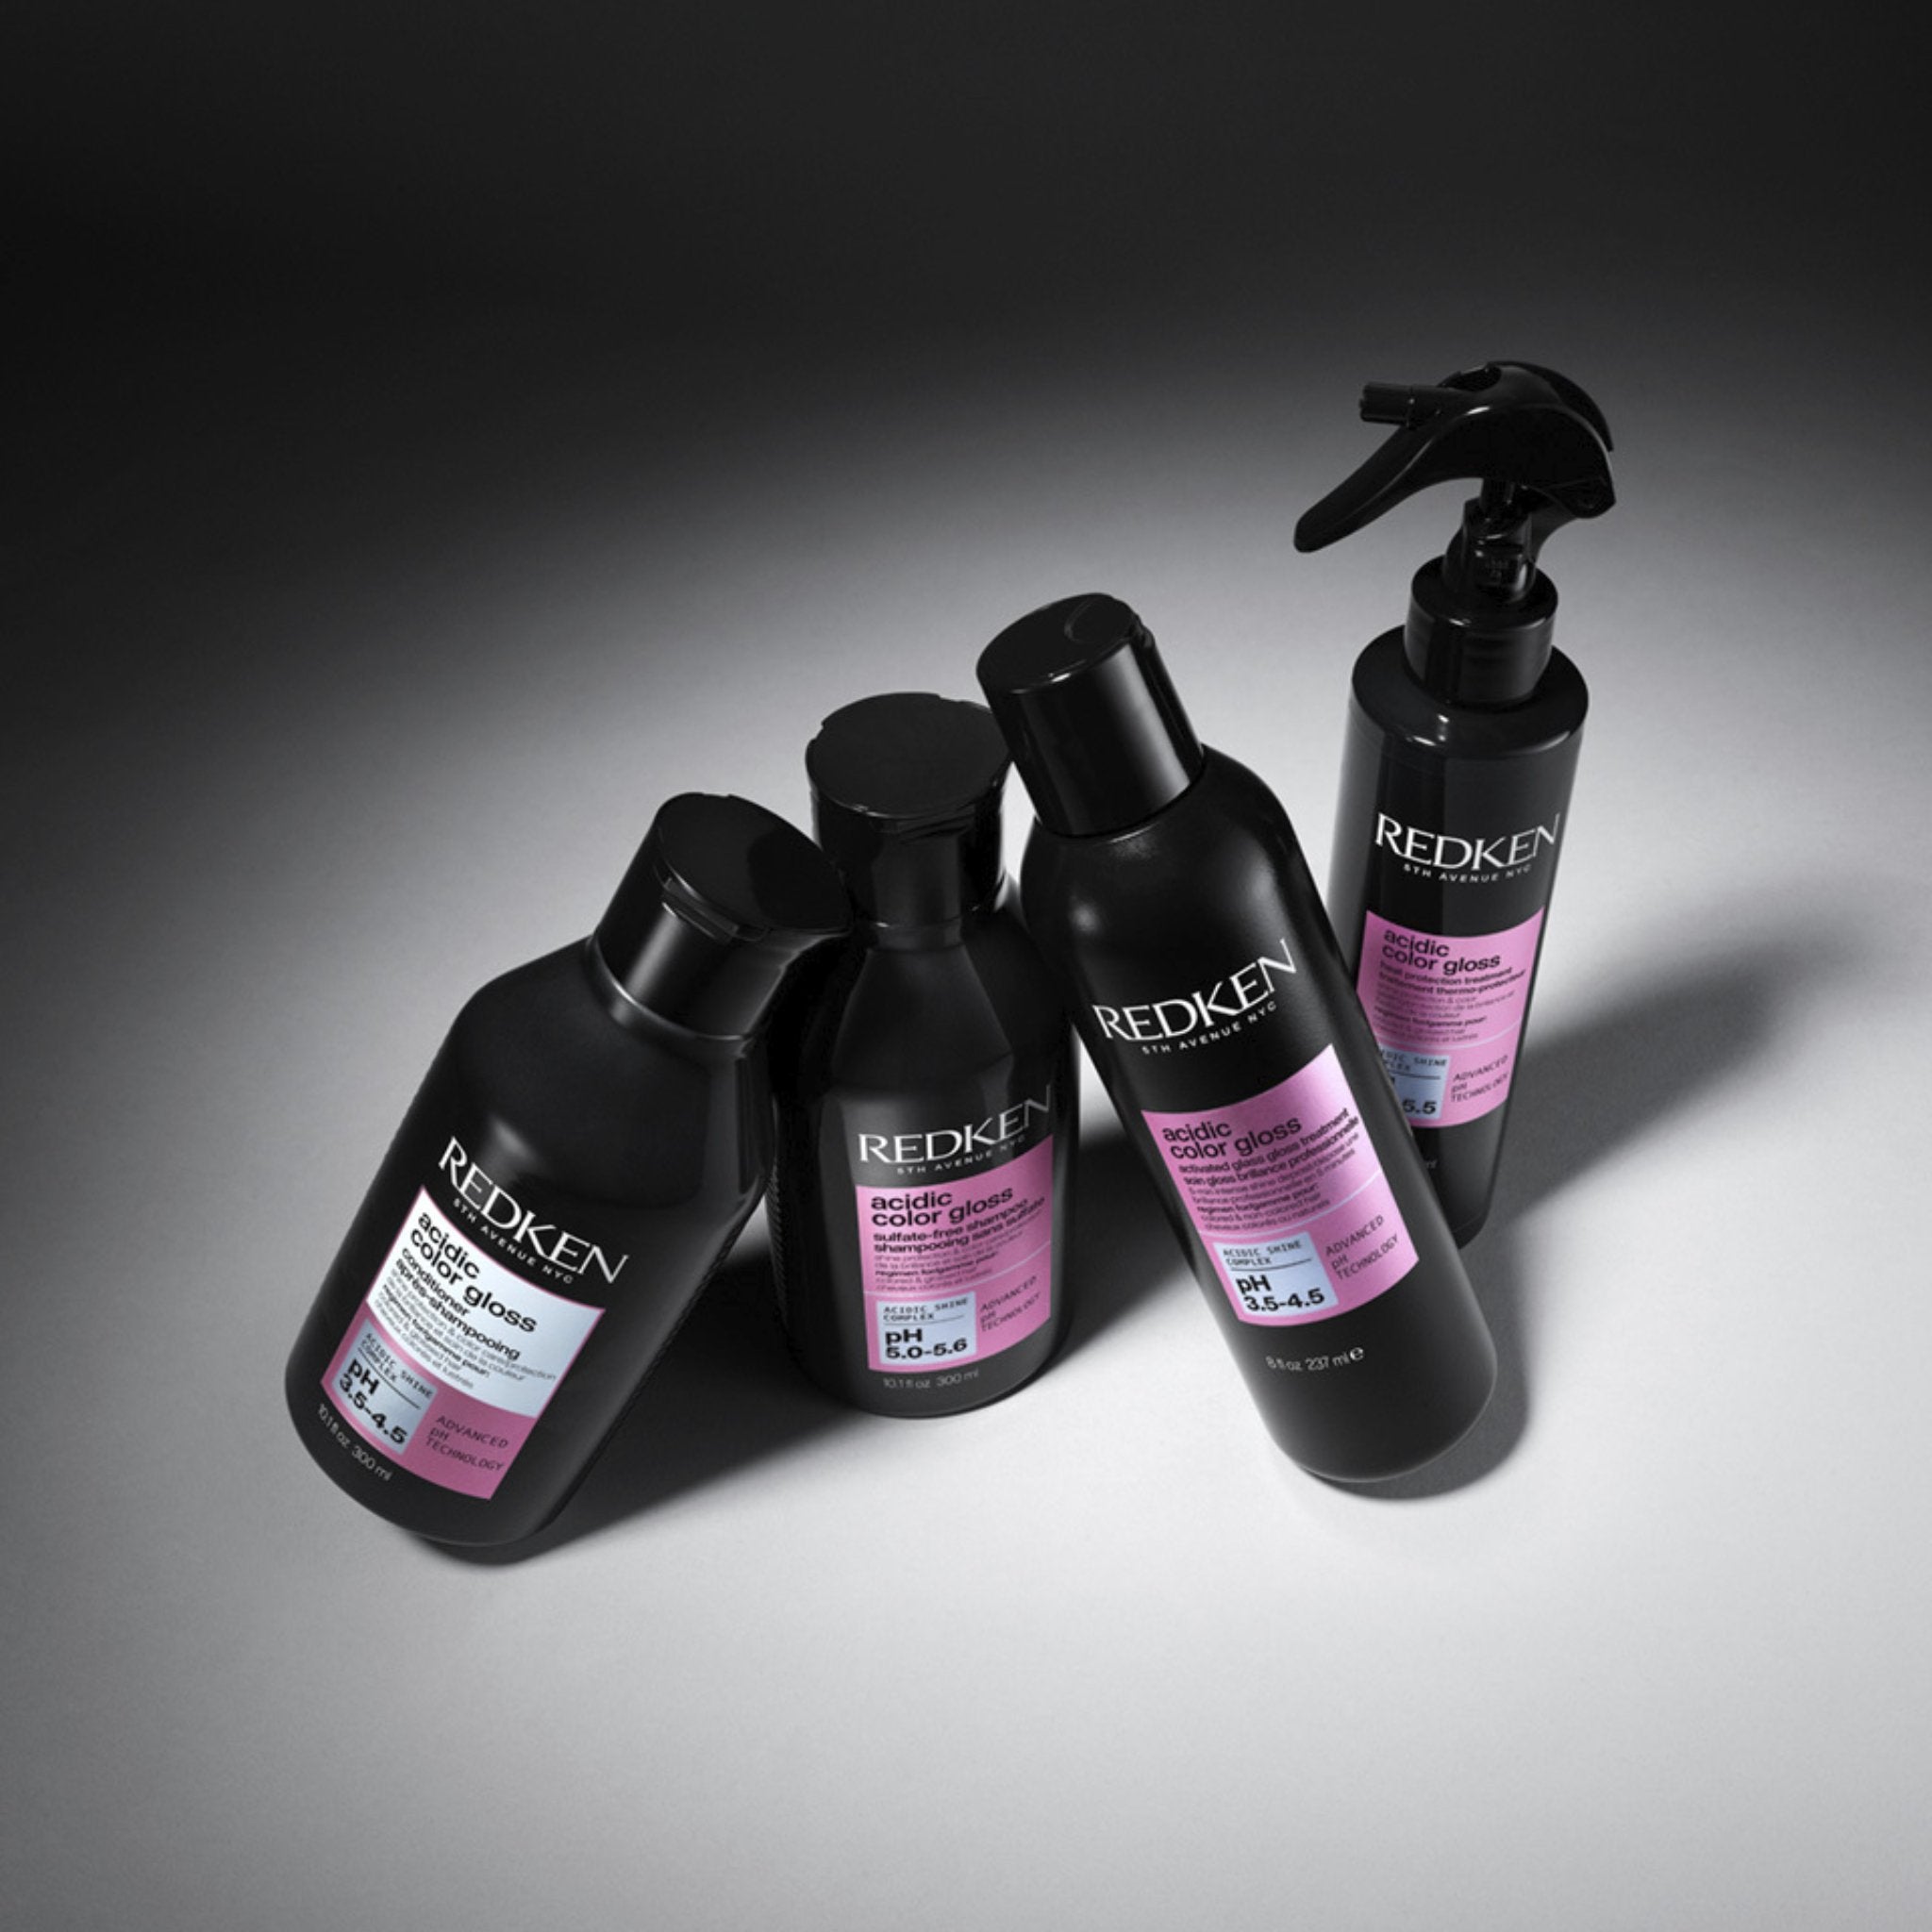 Redken. Acidic Color Gloss Traitement Thermo-Protecteur - 200 ml - Concept C. Shop